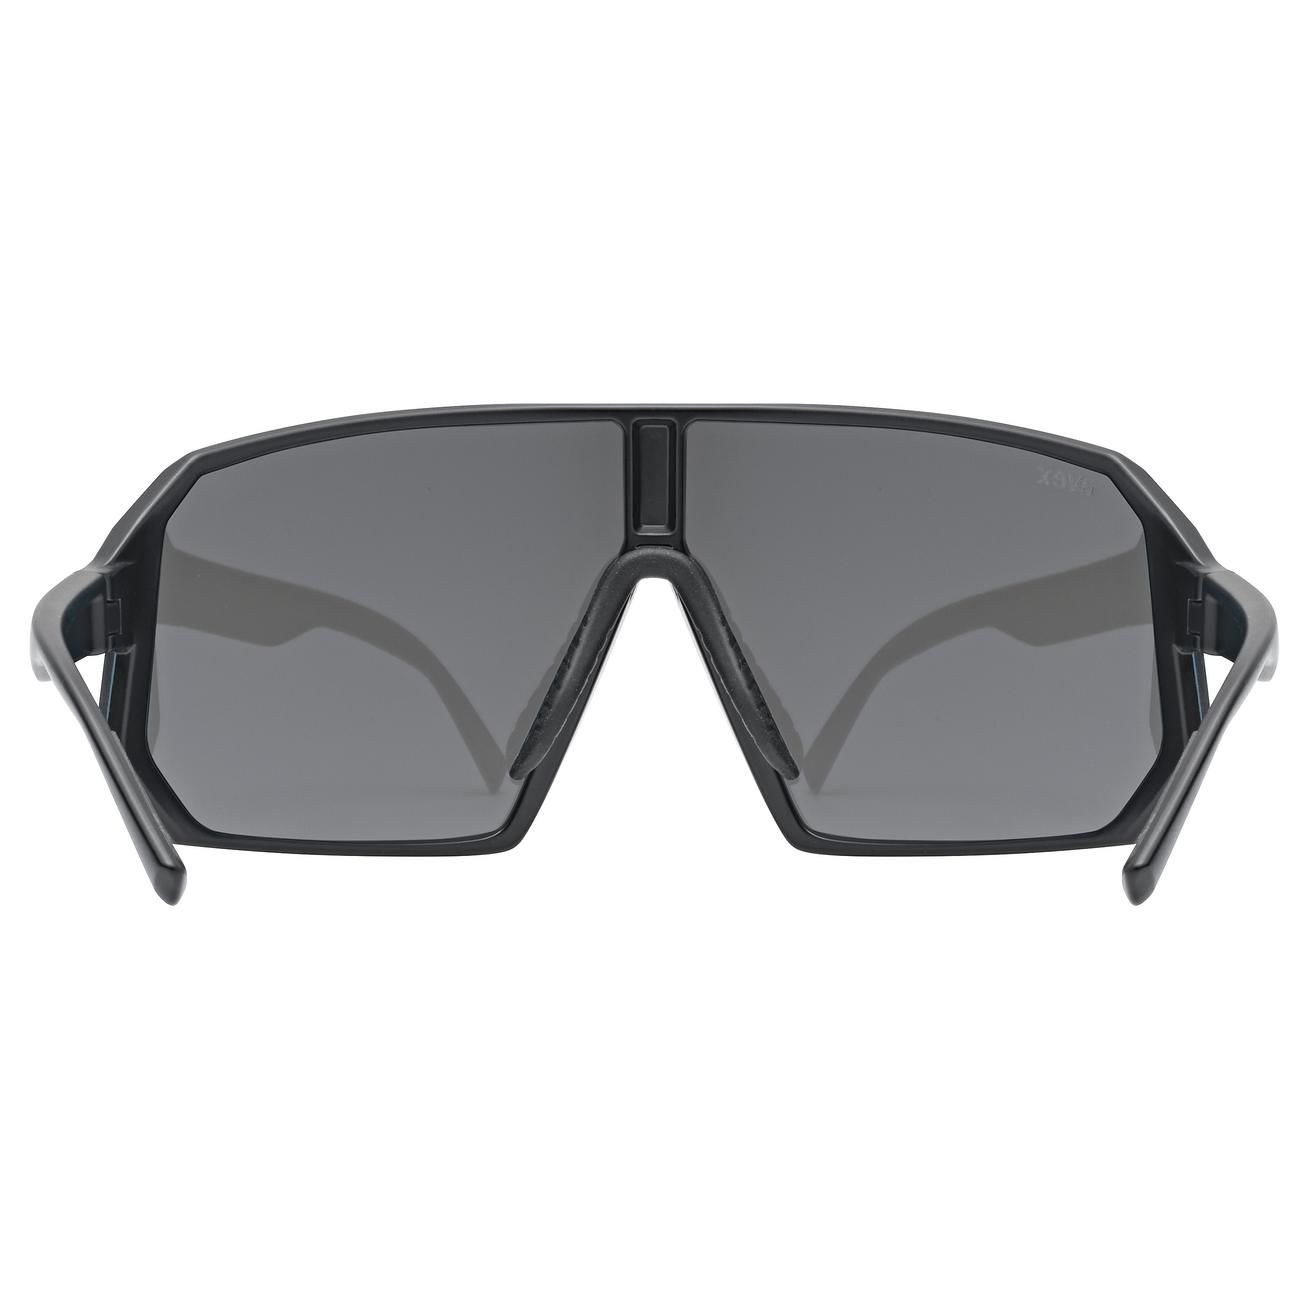 slnečné okuliare uvex sportstyle 237 black matt/silver